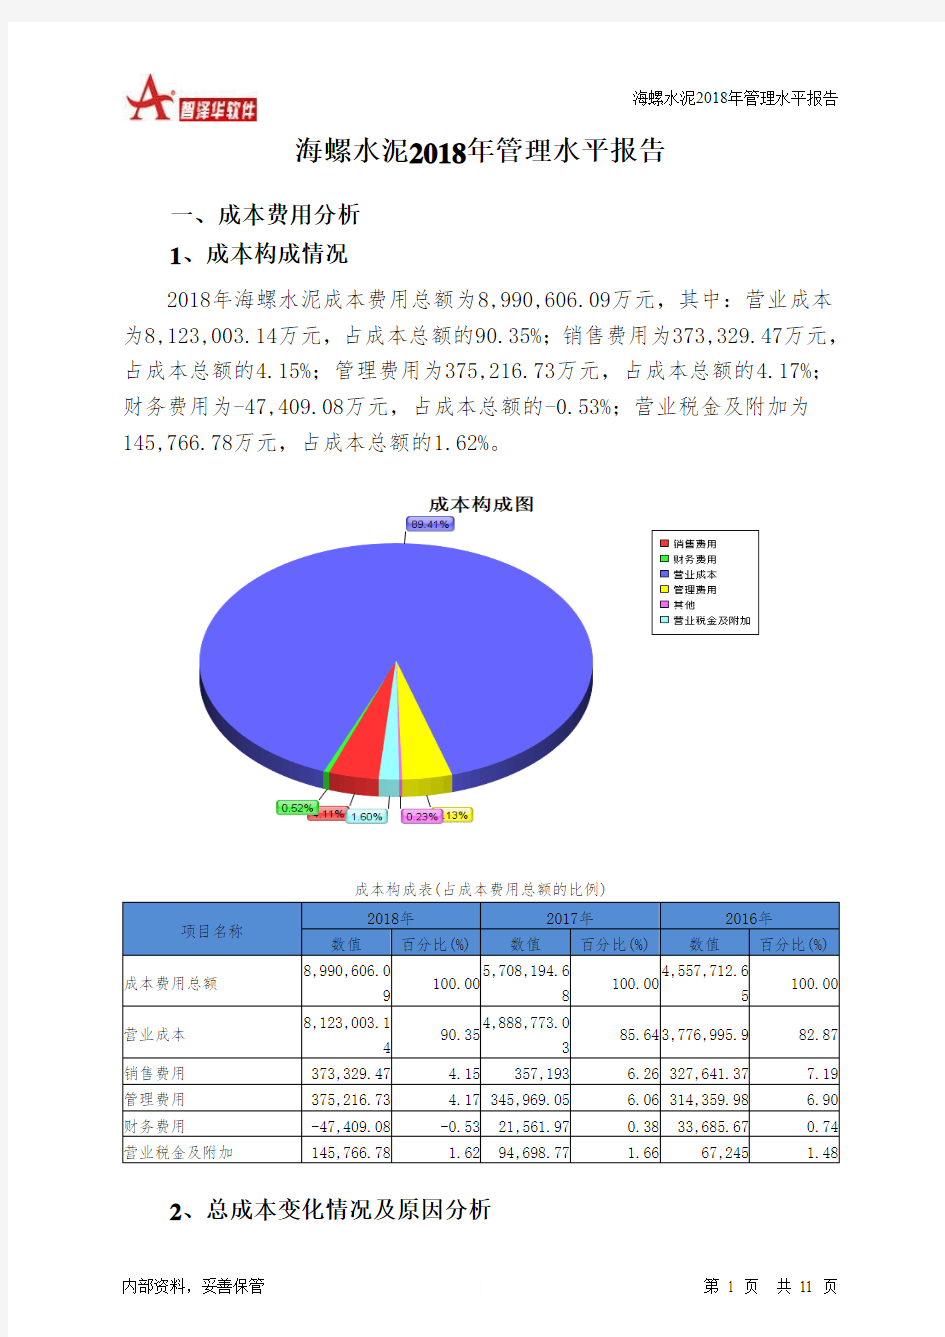 海螺水泥2018年管理水平报告-智泽华